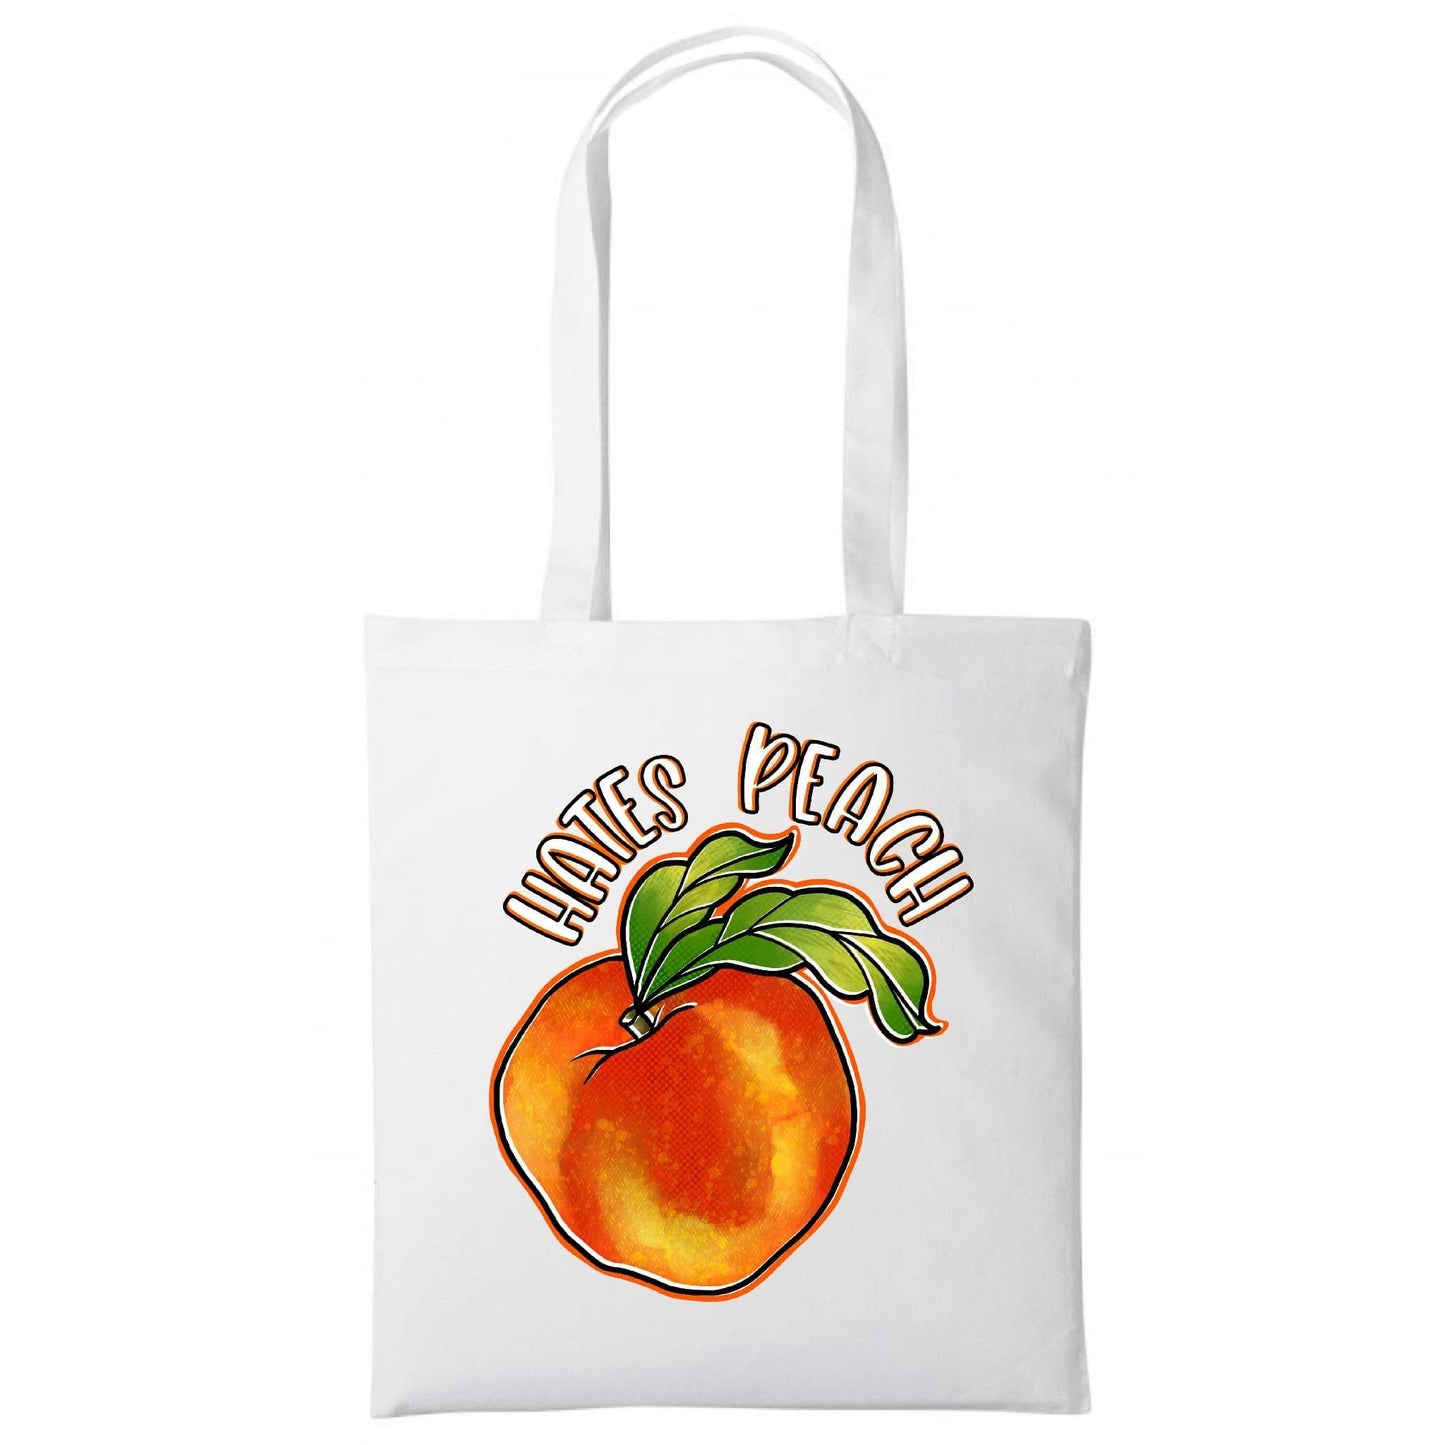 Hates Peach Tote Bag